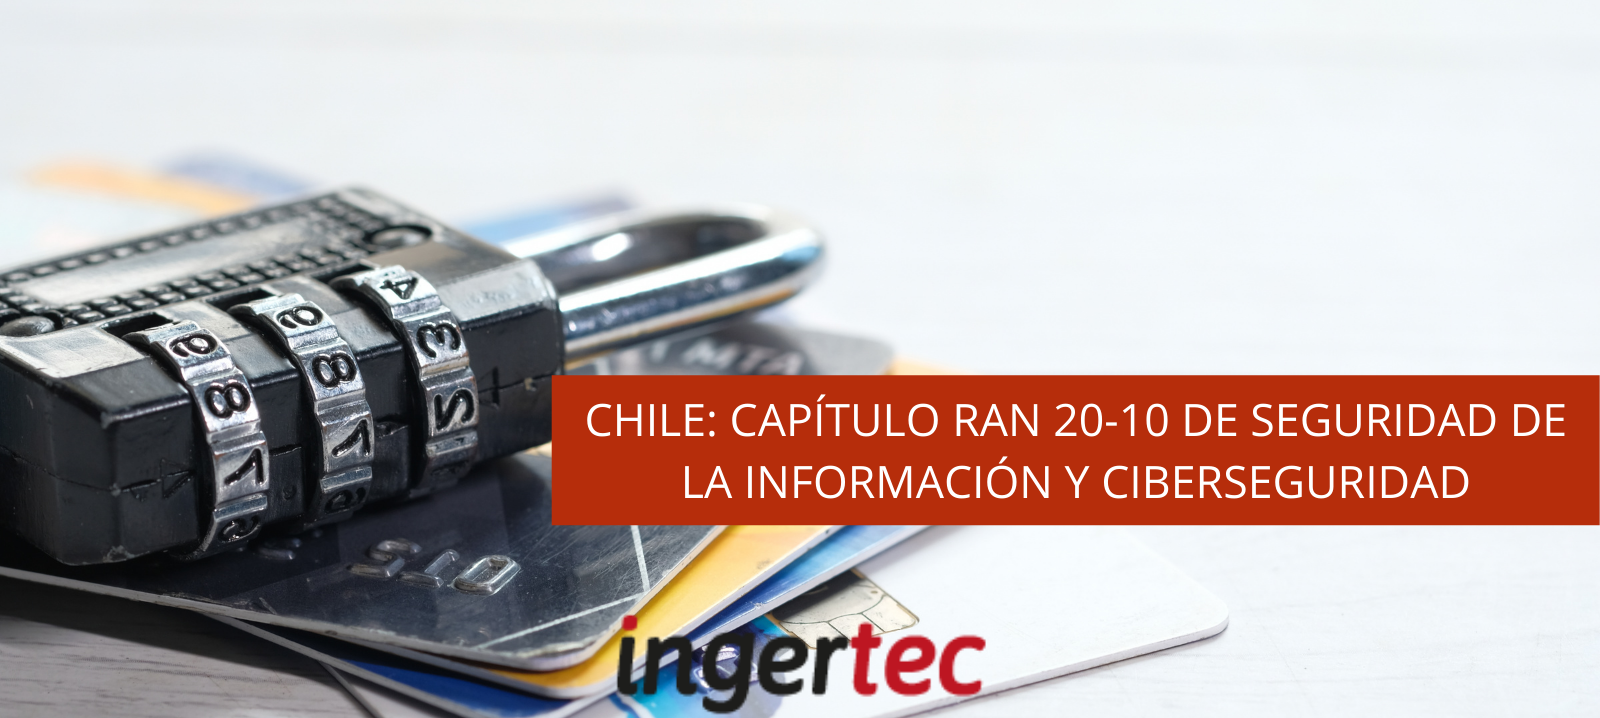 CHILE: CAPÍTULO RAN 20-10 DE SEGURIDAD DE LA INFORMACIÓN Y CIBERSEGURIDAD